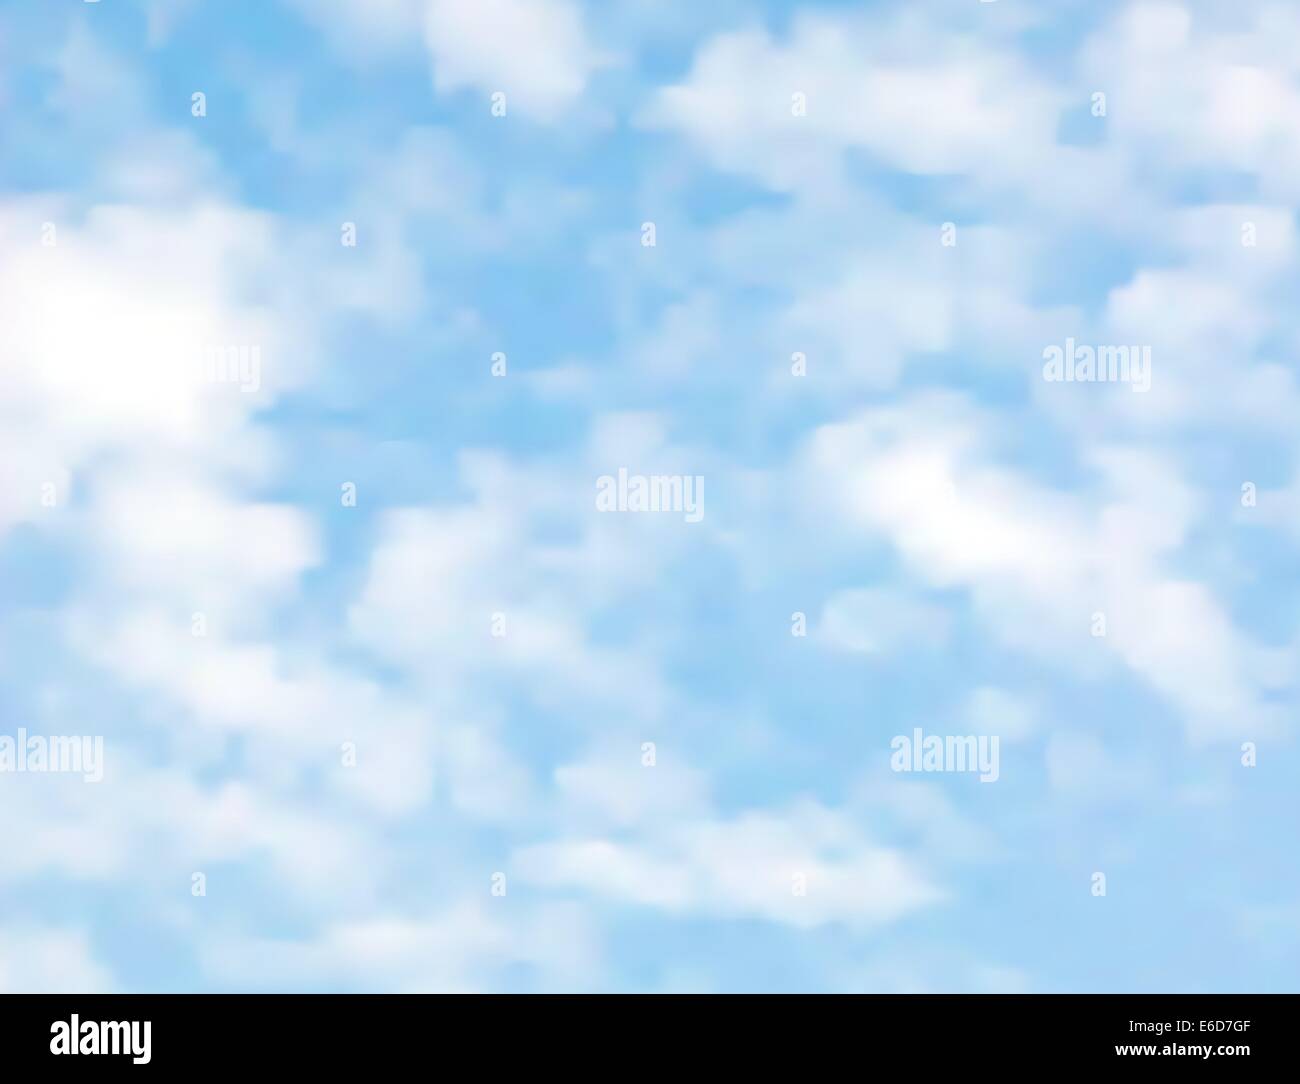 Realistische bearbeitbares Vektor-Illustration leichte Wolken am blauen Himmel mit ein Verlaufsgitter gemacht Stock Vektor